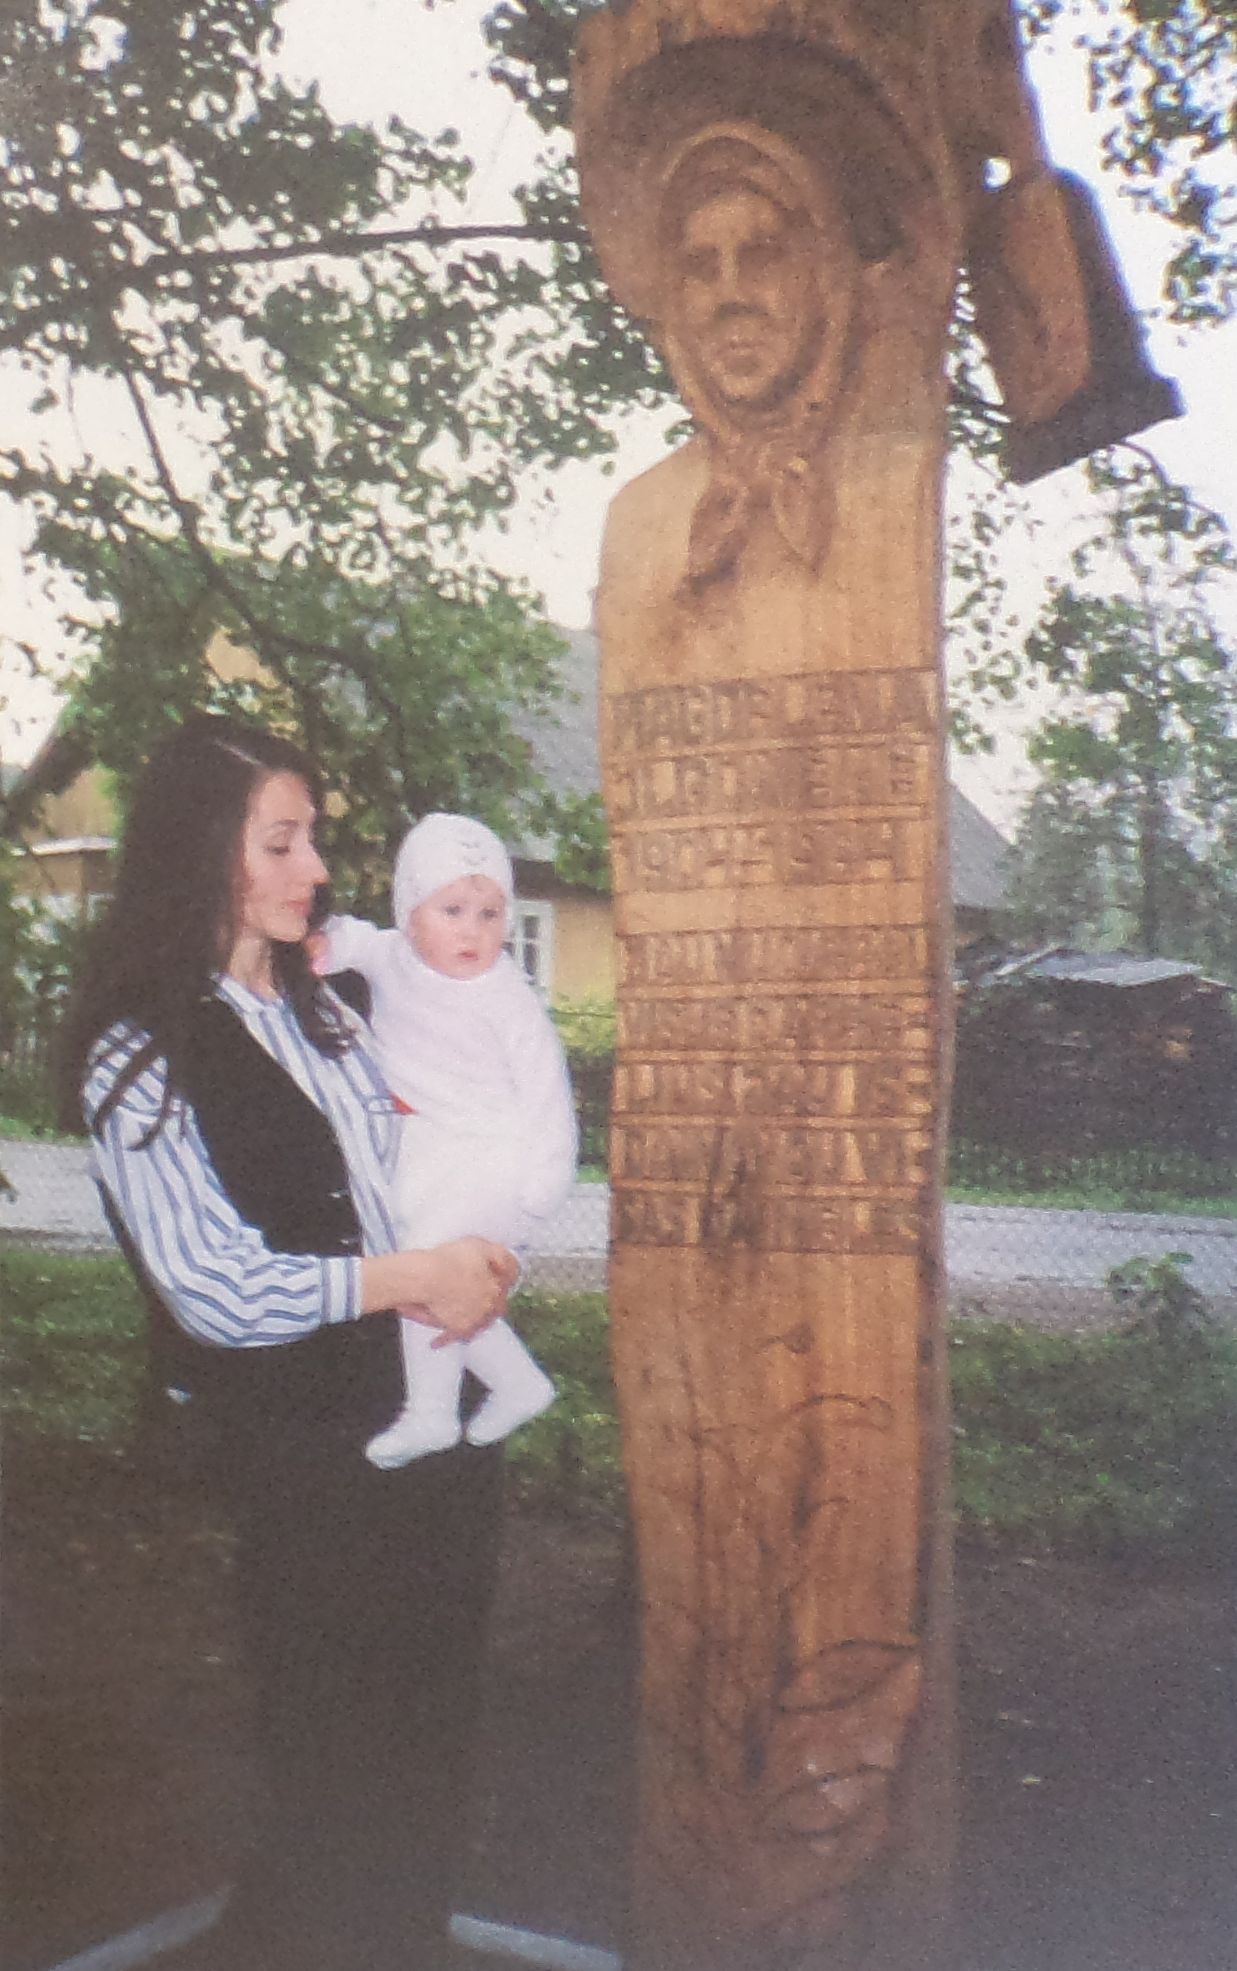 Liaudies meistras Ipolitas Užkurnys iš ąžuolo G. Ilgūno mamai sukūrė paminklą. Ugnė su dukra Guste. 1995 m. rugsėjo 8 d.